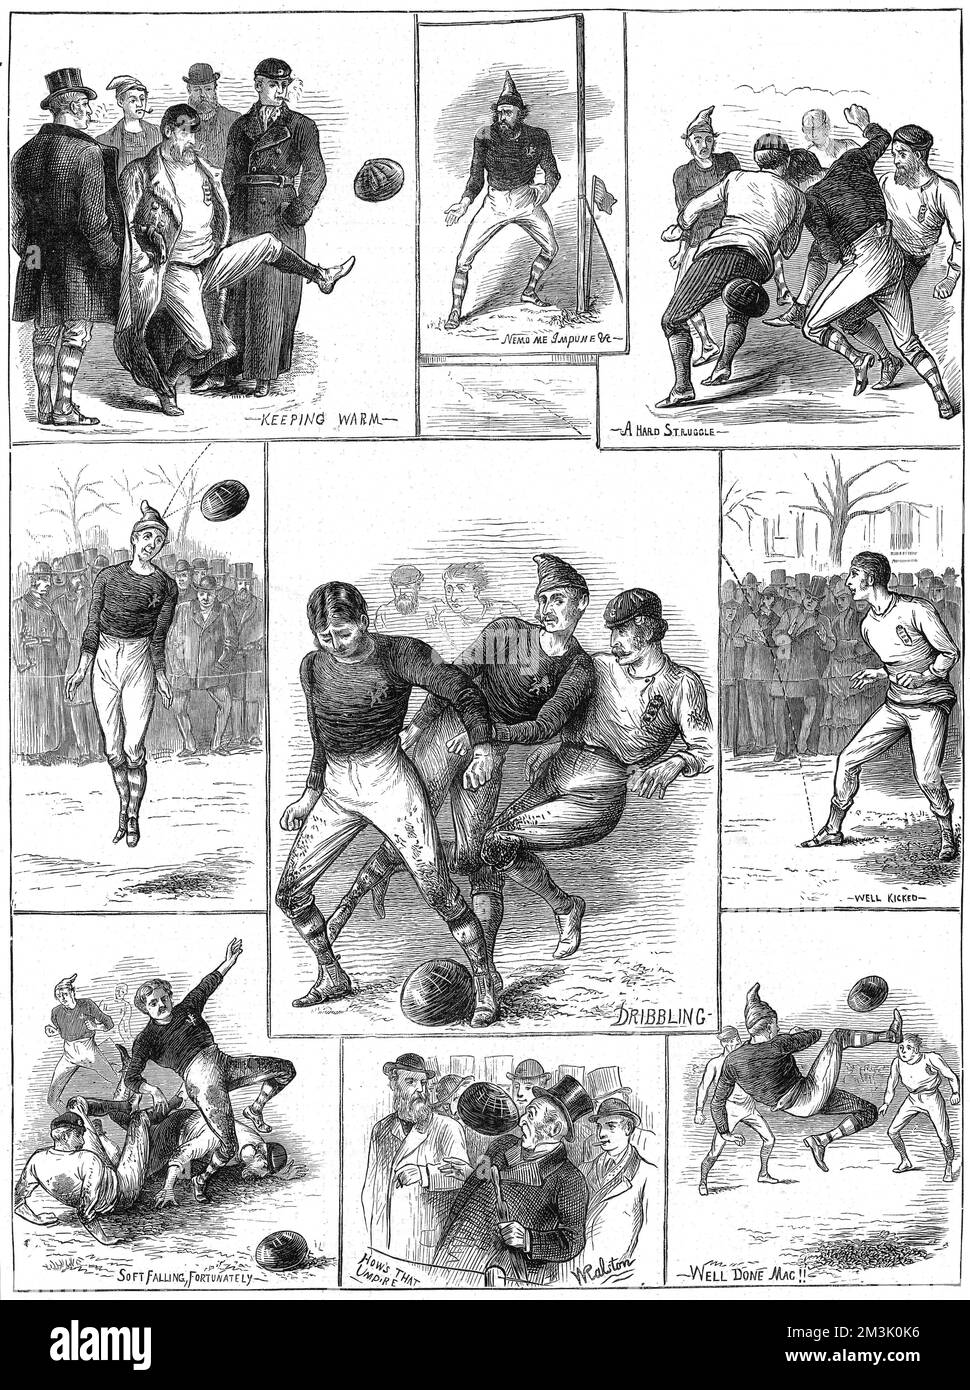 The Scotland vs England Friendly vom 30.. November 1872, gespielt auf dem West of Scotland Cricket Club Ground, Partick, bei Glasgow. Dies war das erste internationale Fußballspiel, das in Schottland nach den Regeln der Football Association gespielt wurde. Das Spiel führte zu einem Unentschieden ohne Tor. 1872 Stockfoto